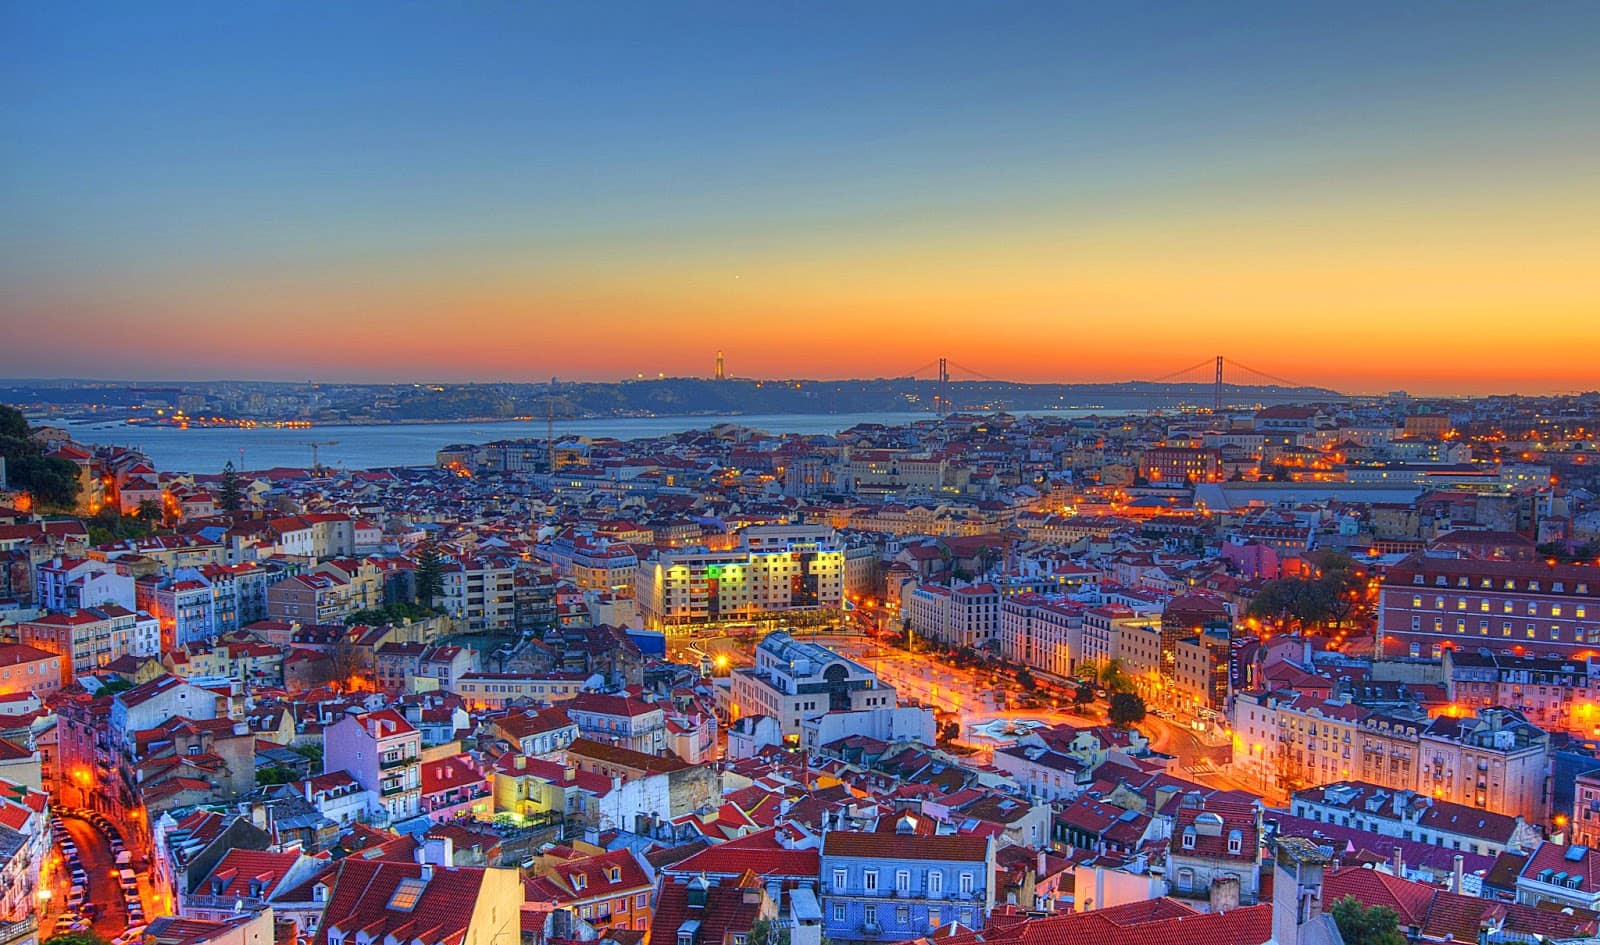 Melhores regiões para se hospedar em Lisboa